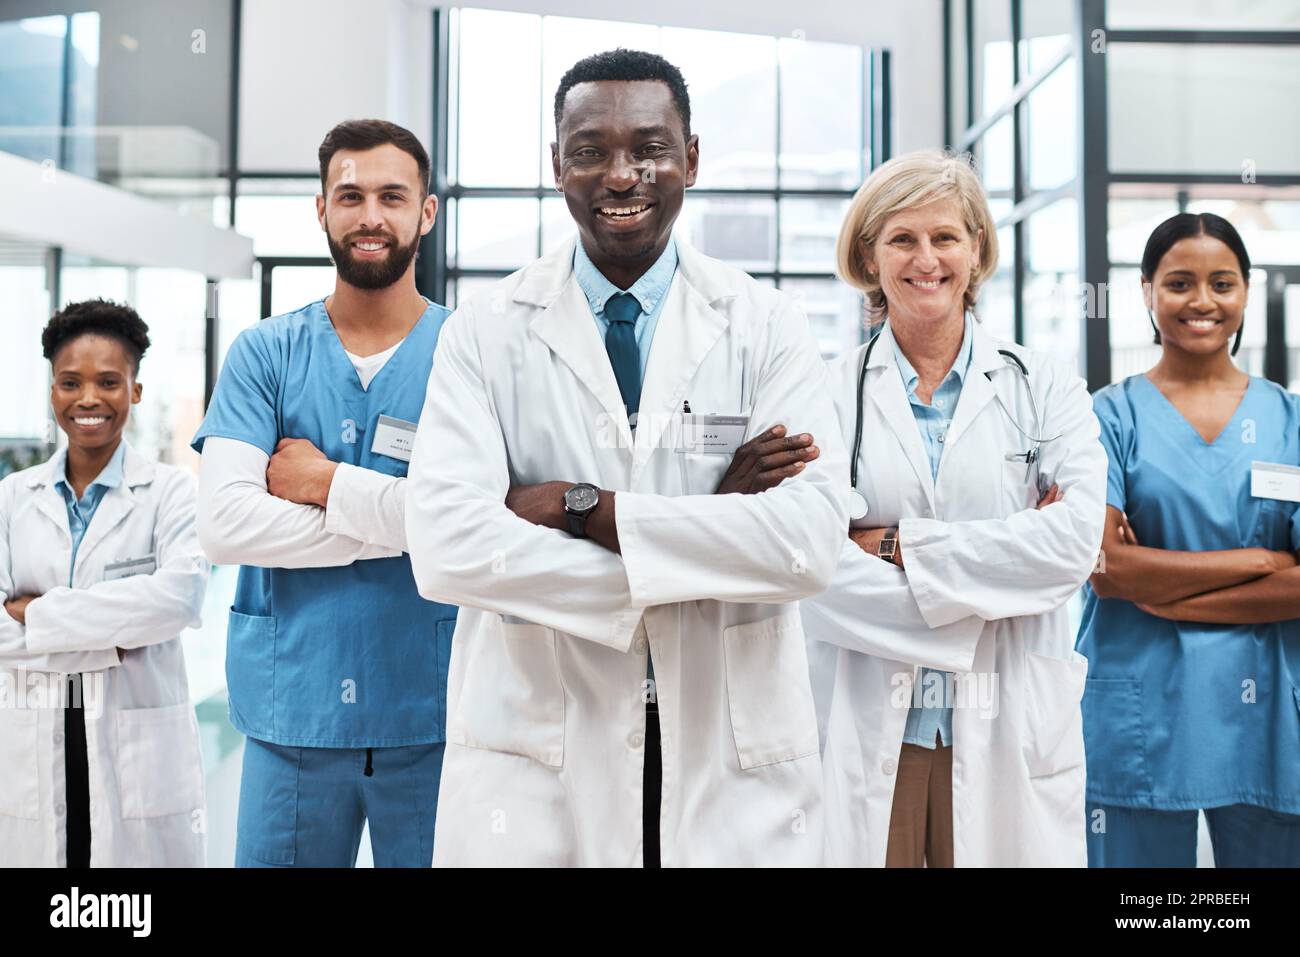 Die multidisziplinäre Versorgung ist ein integrierter teamübergreifender Ansatz im Gesundheitswesen. Porträt einer Gruppe von Ärzten, die in einem Krankenhaus zusammenstehen. Stockfoto